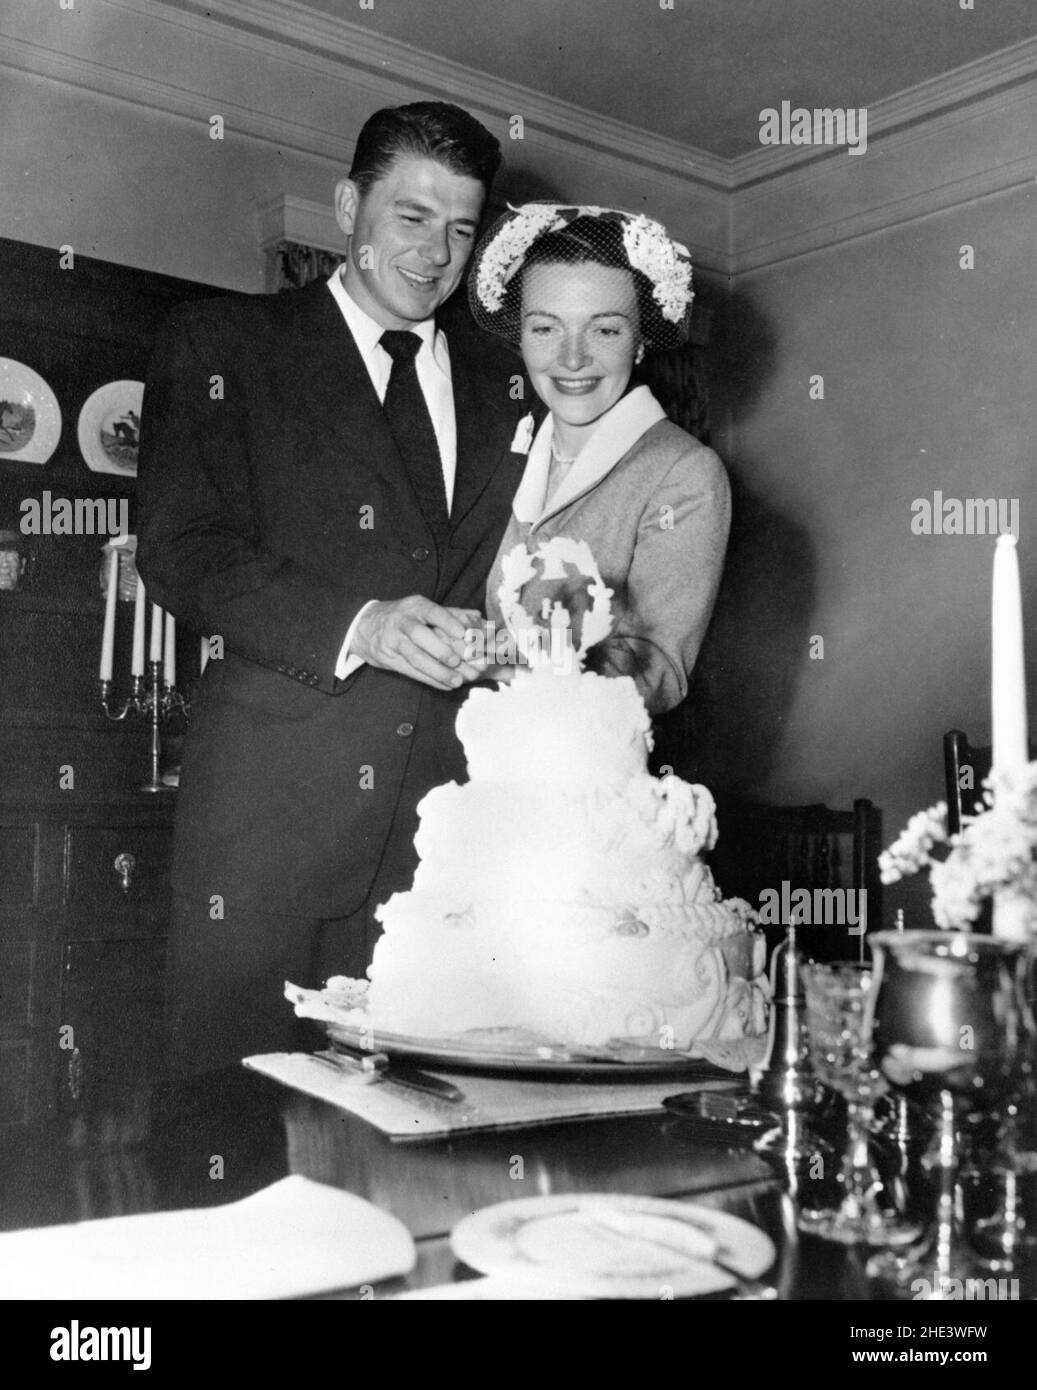 Ronald Reagan und Nancy Reagan schneiden Kuchen im Haus von William Holden nach ihrer Hochzeit in Toluca Lake, Kalifornien. Stockfoto